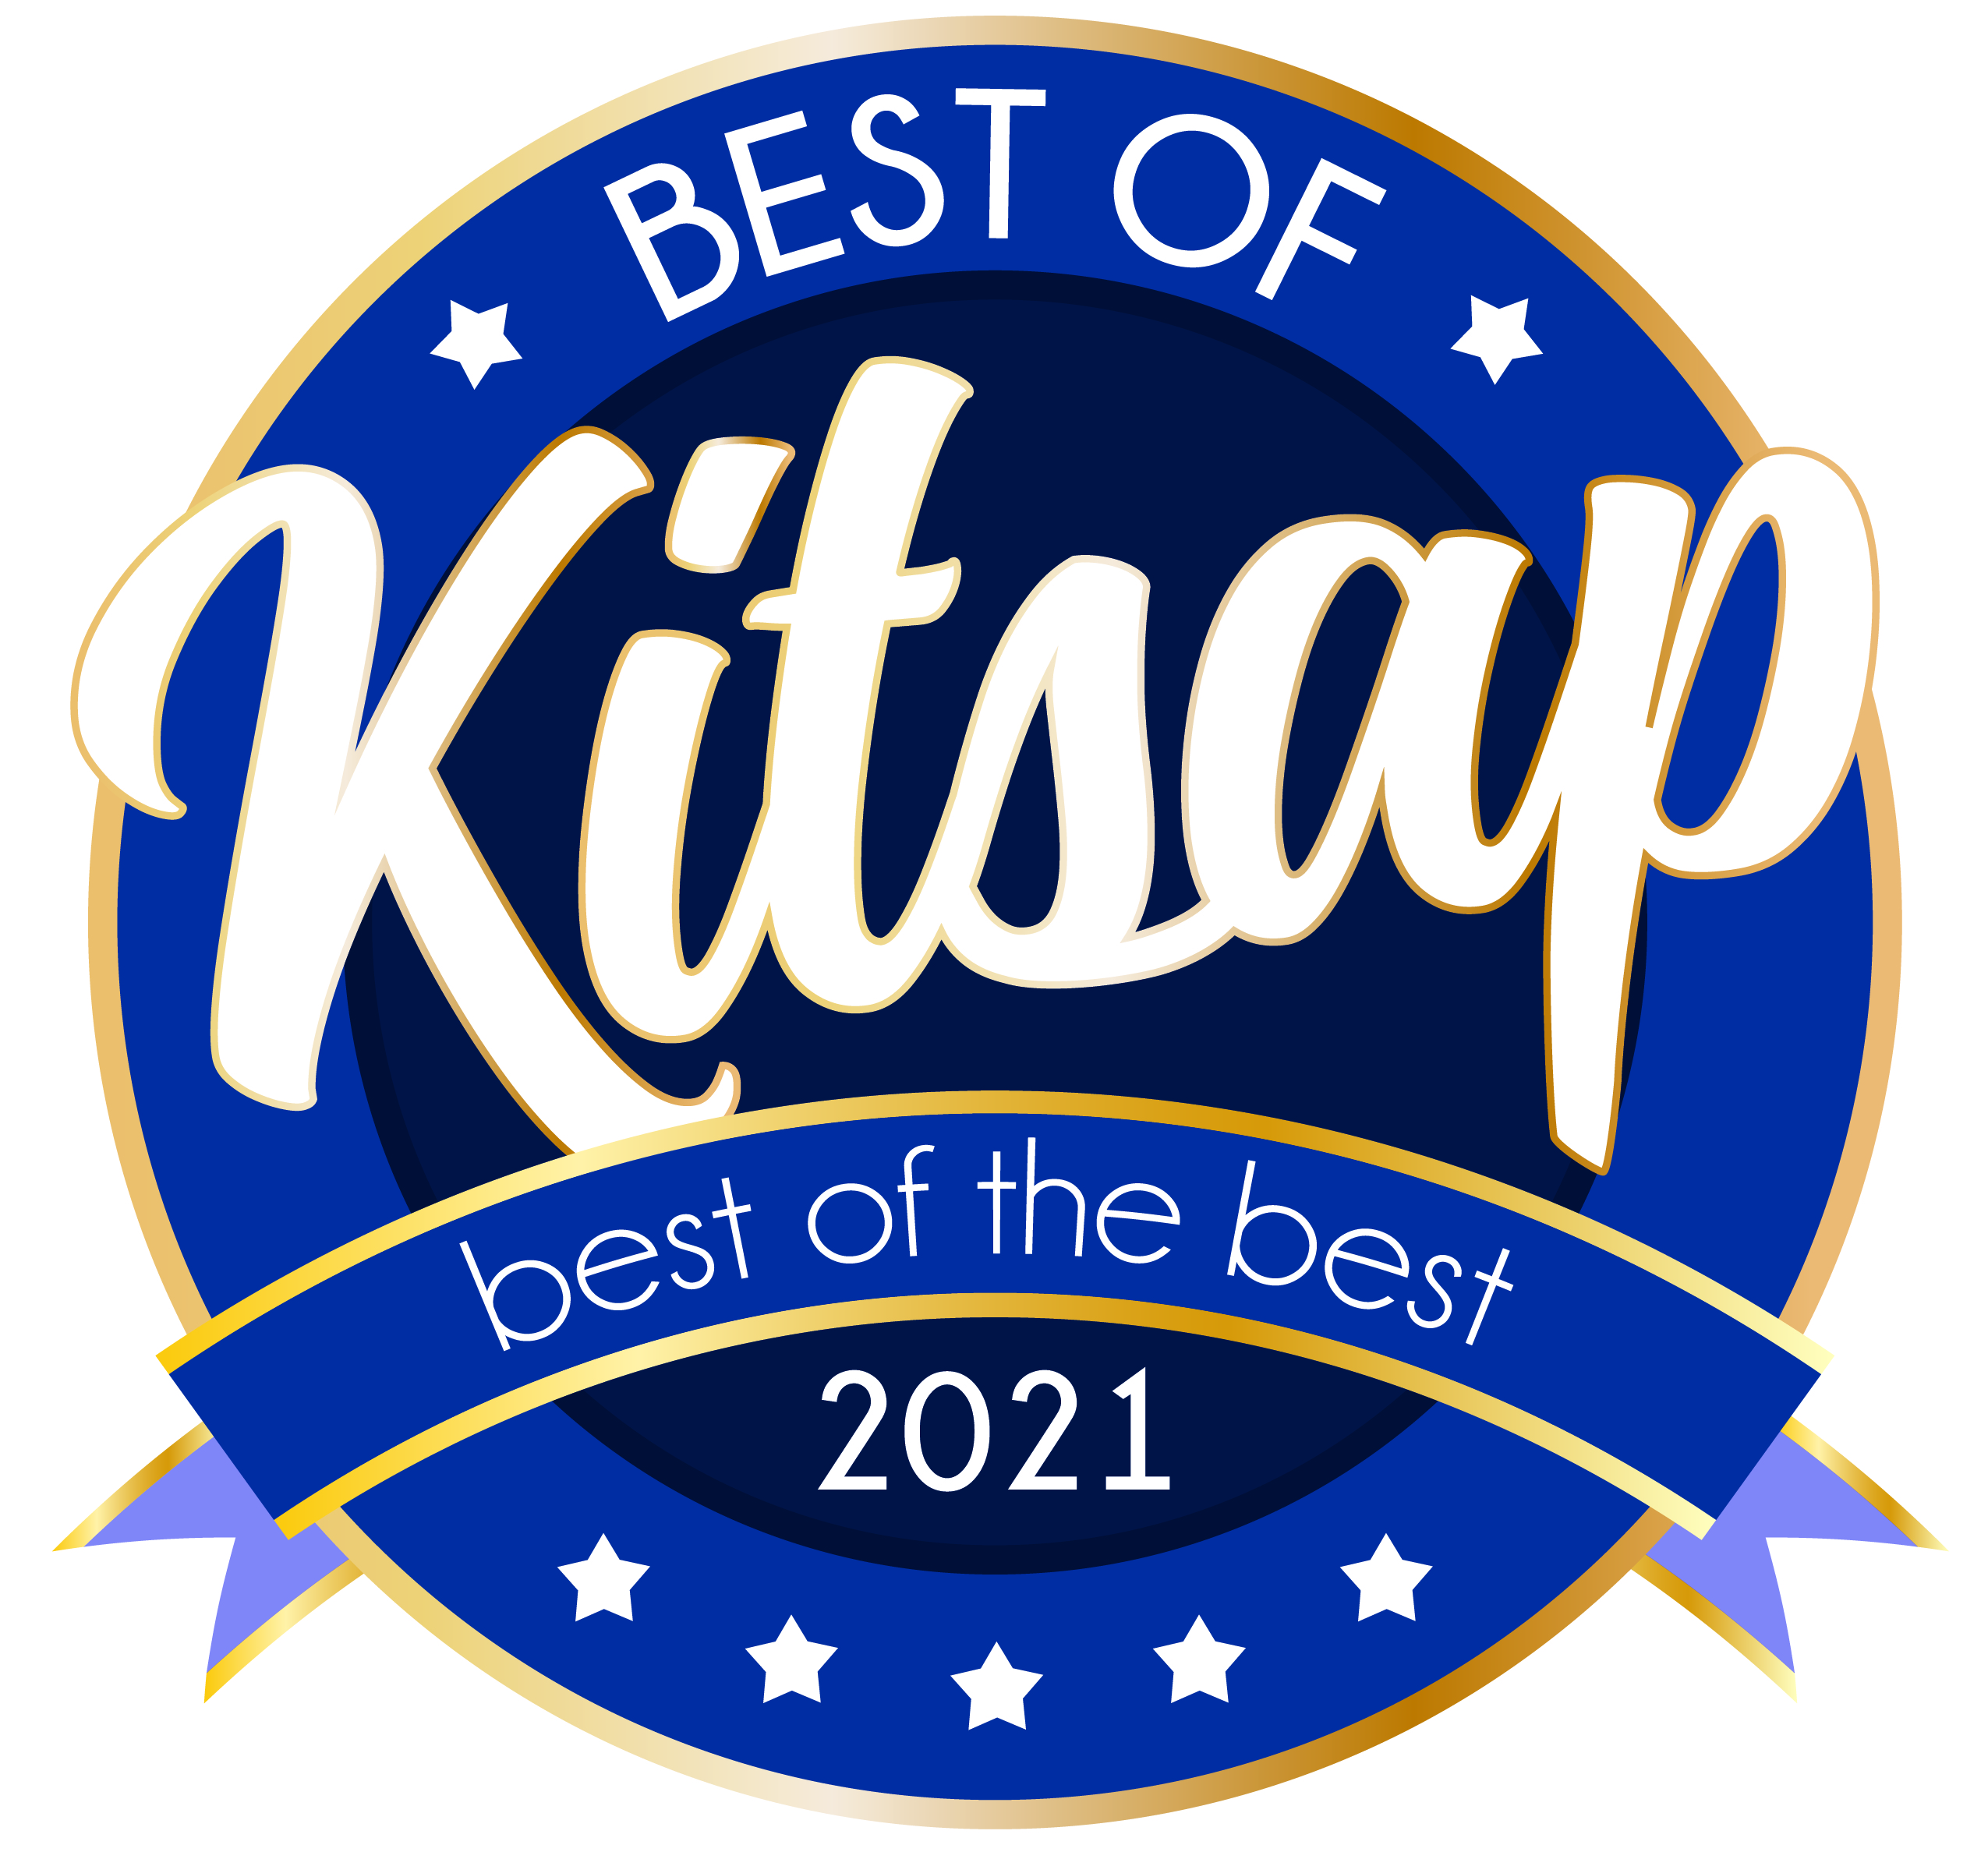 Best of Kitsap